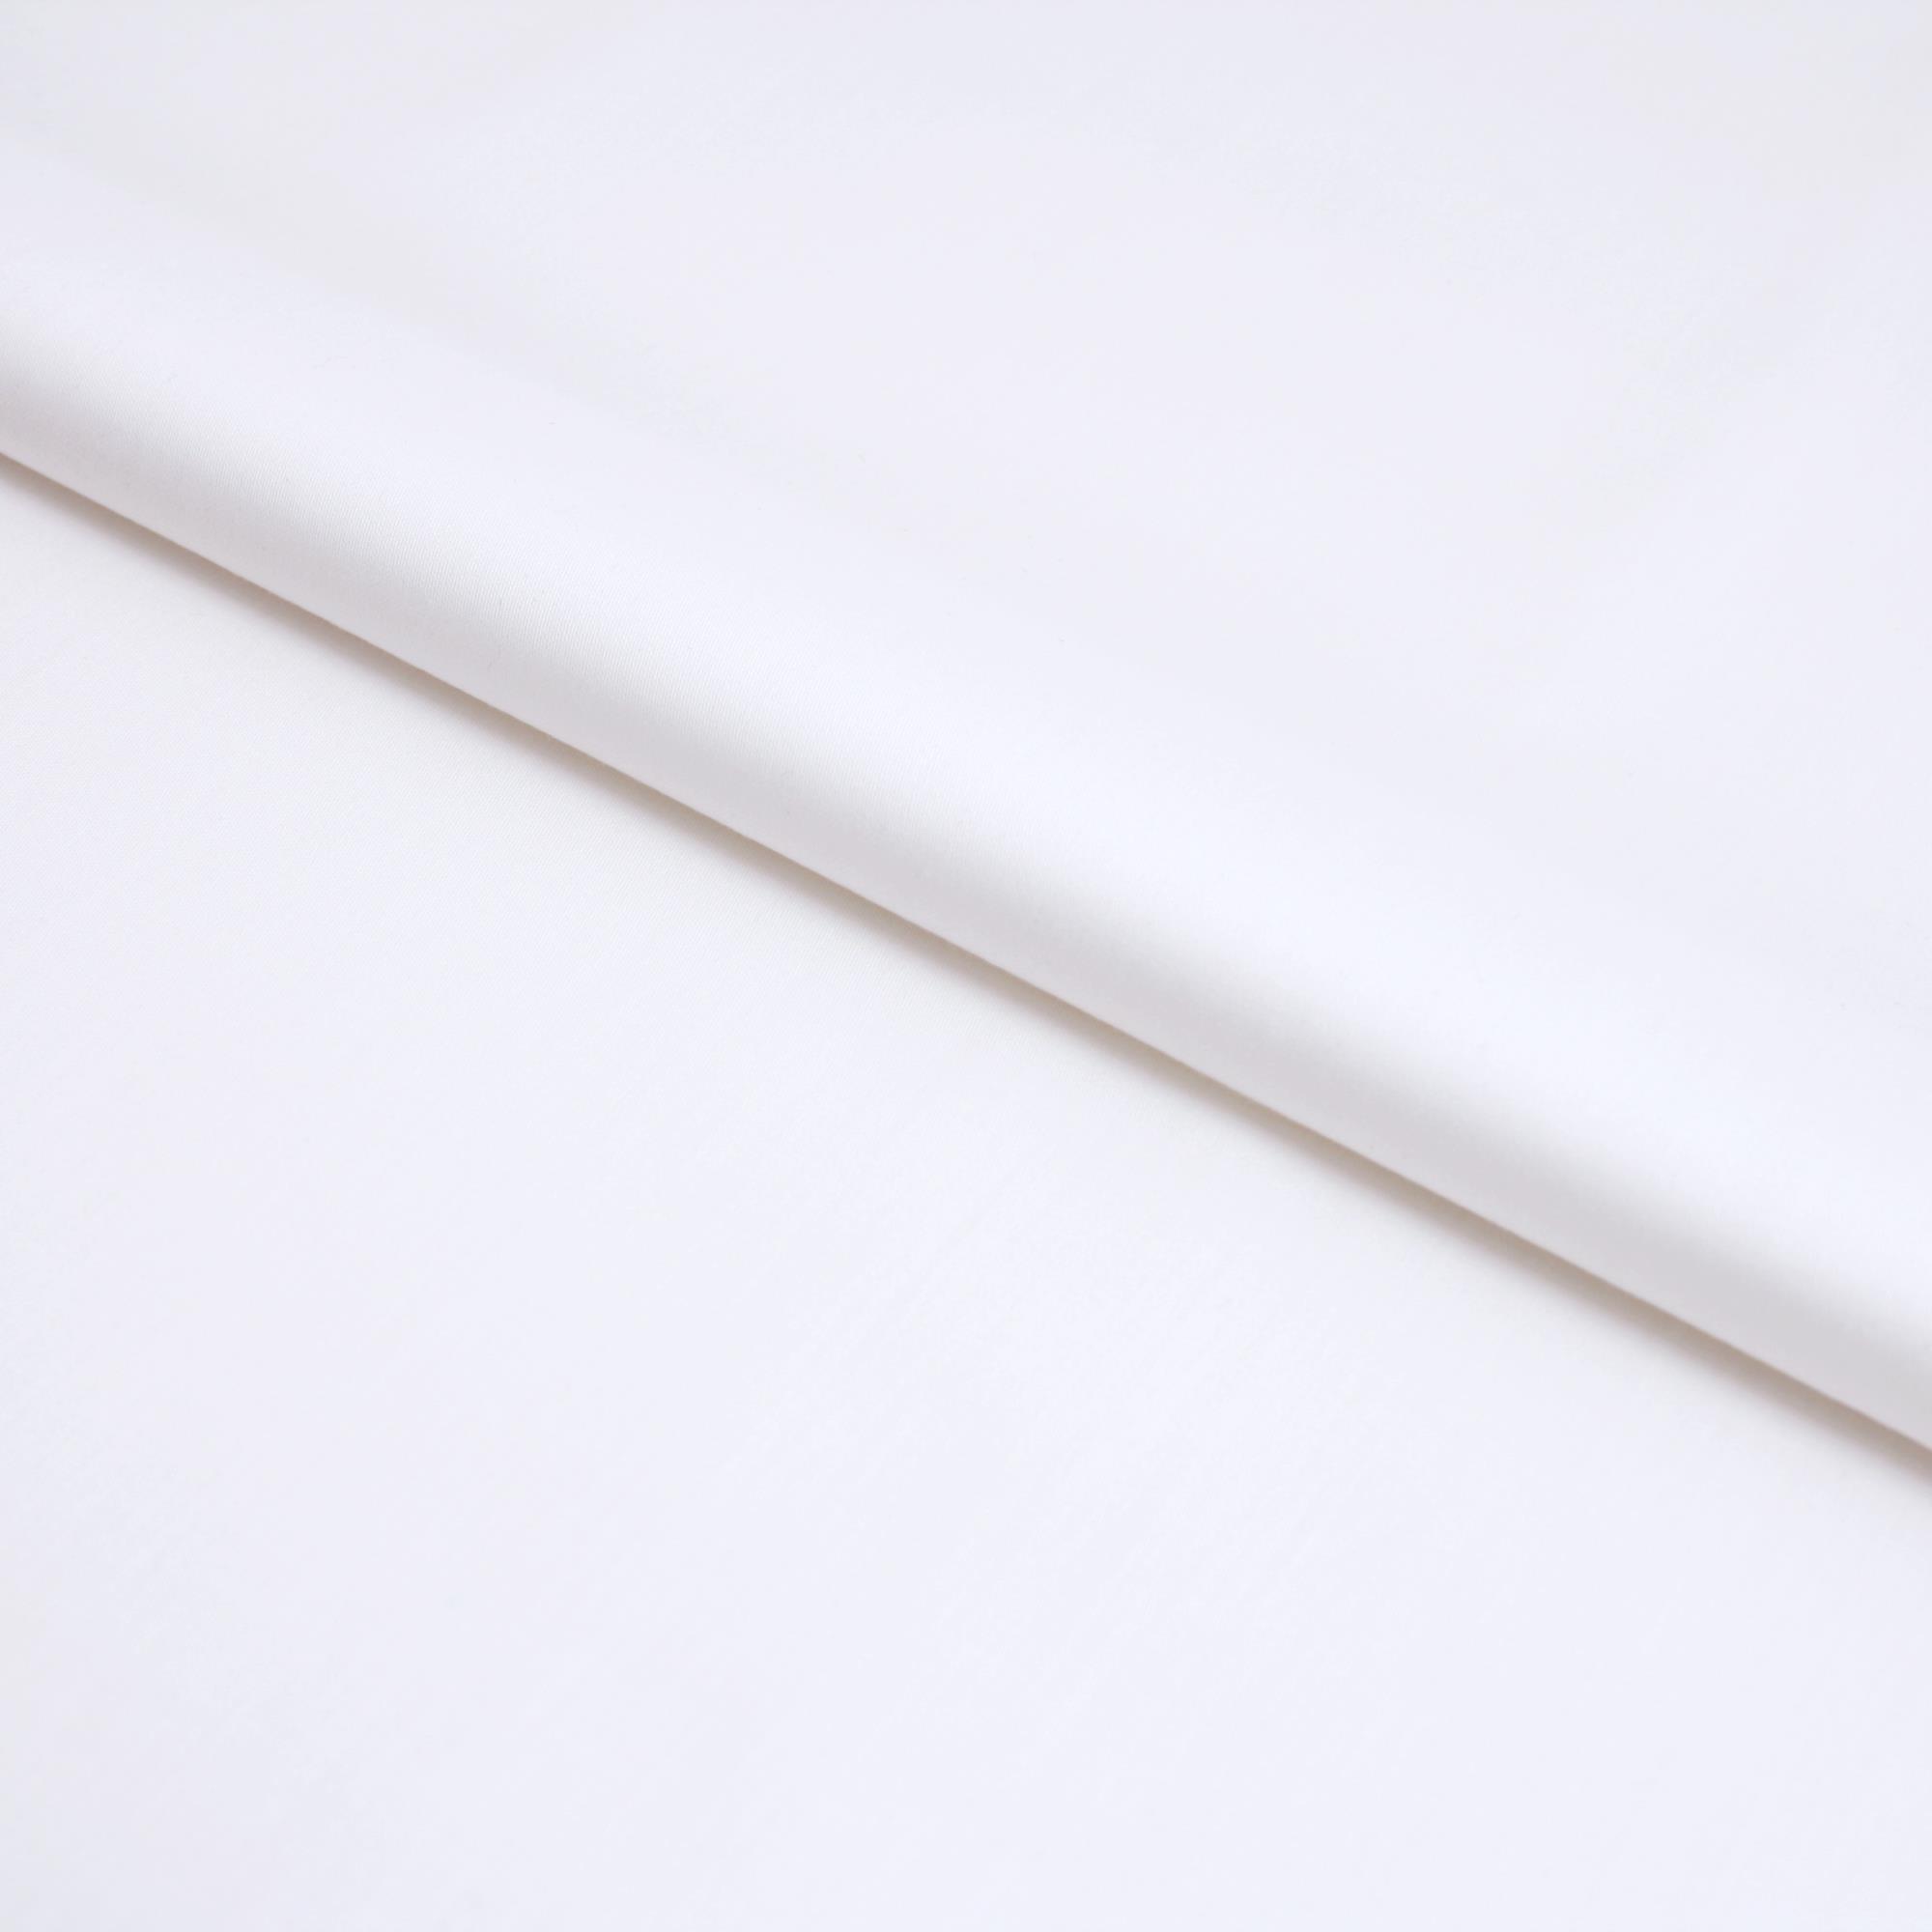 Stoff Meterware Baumwolle Linon Weiß 150 cm